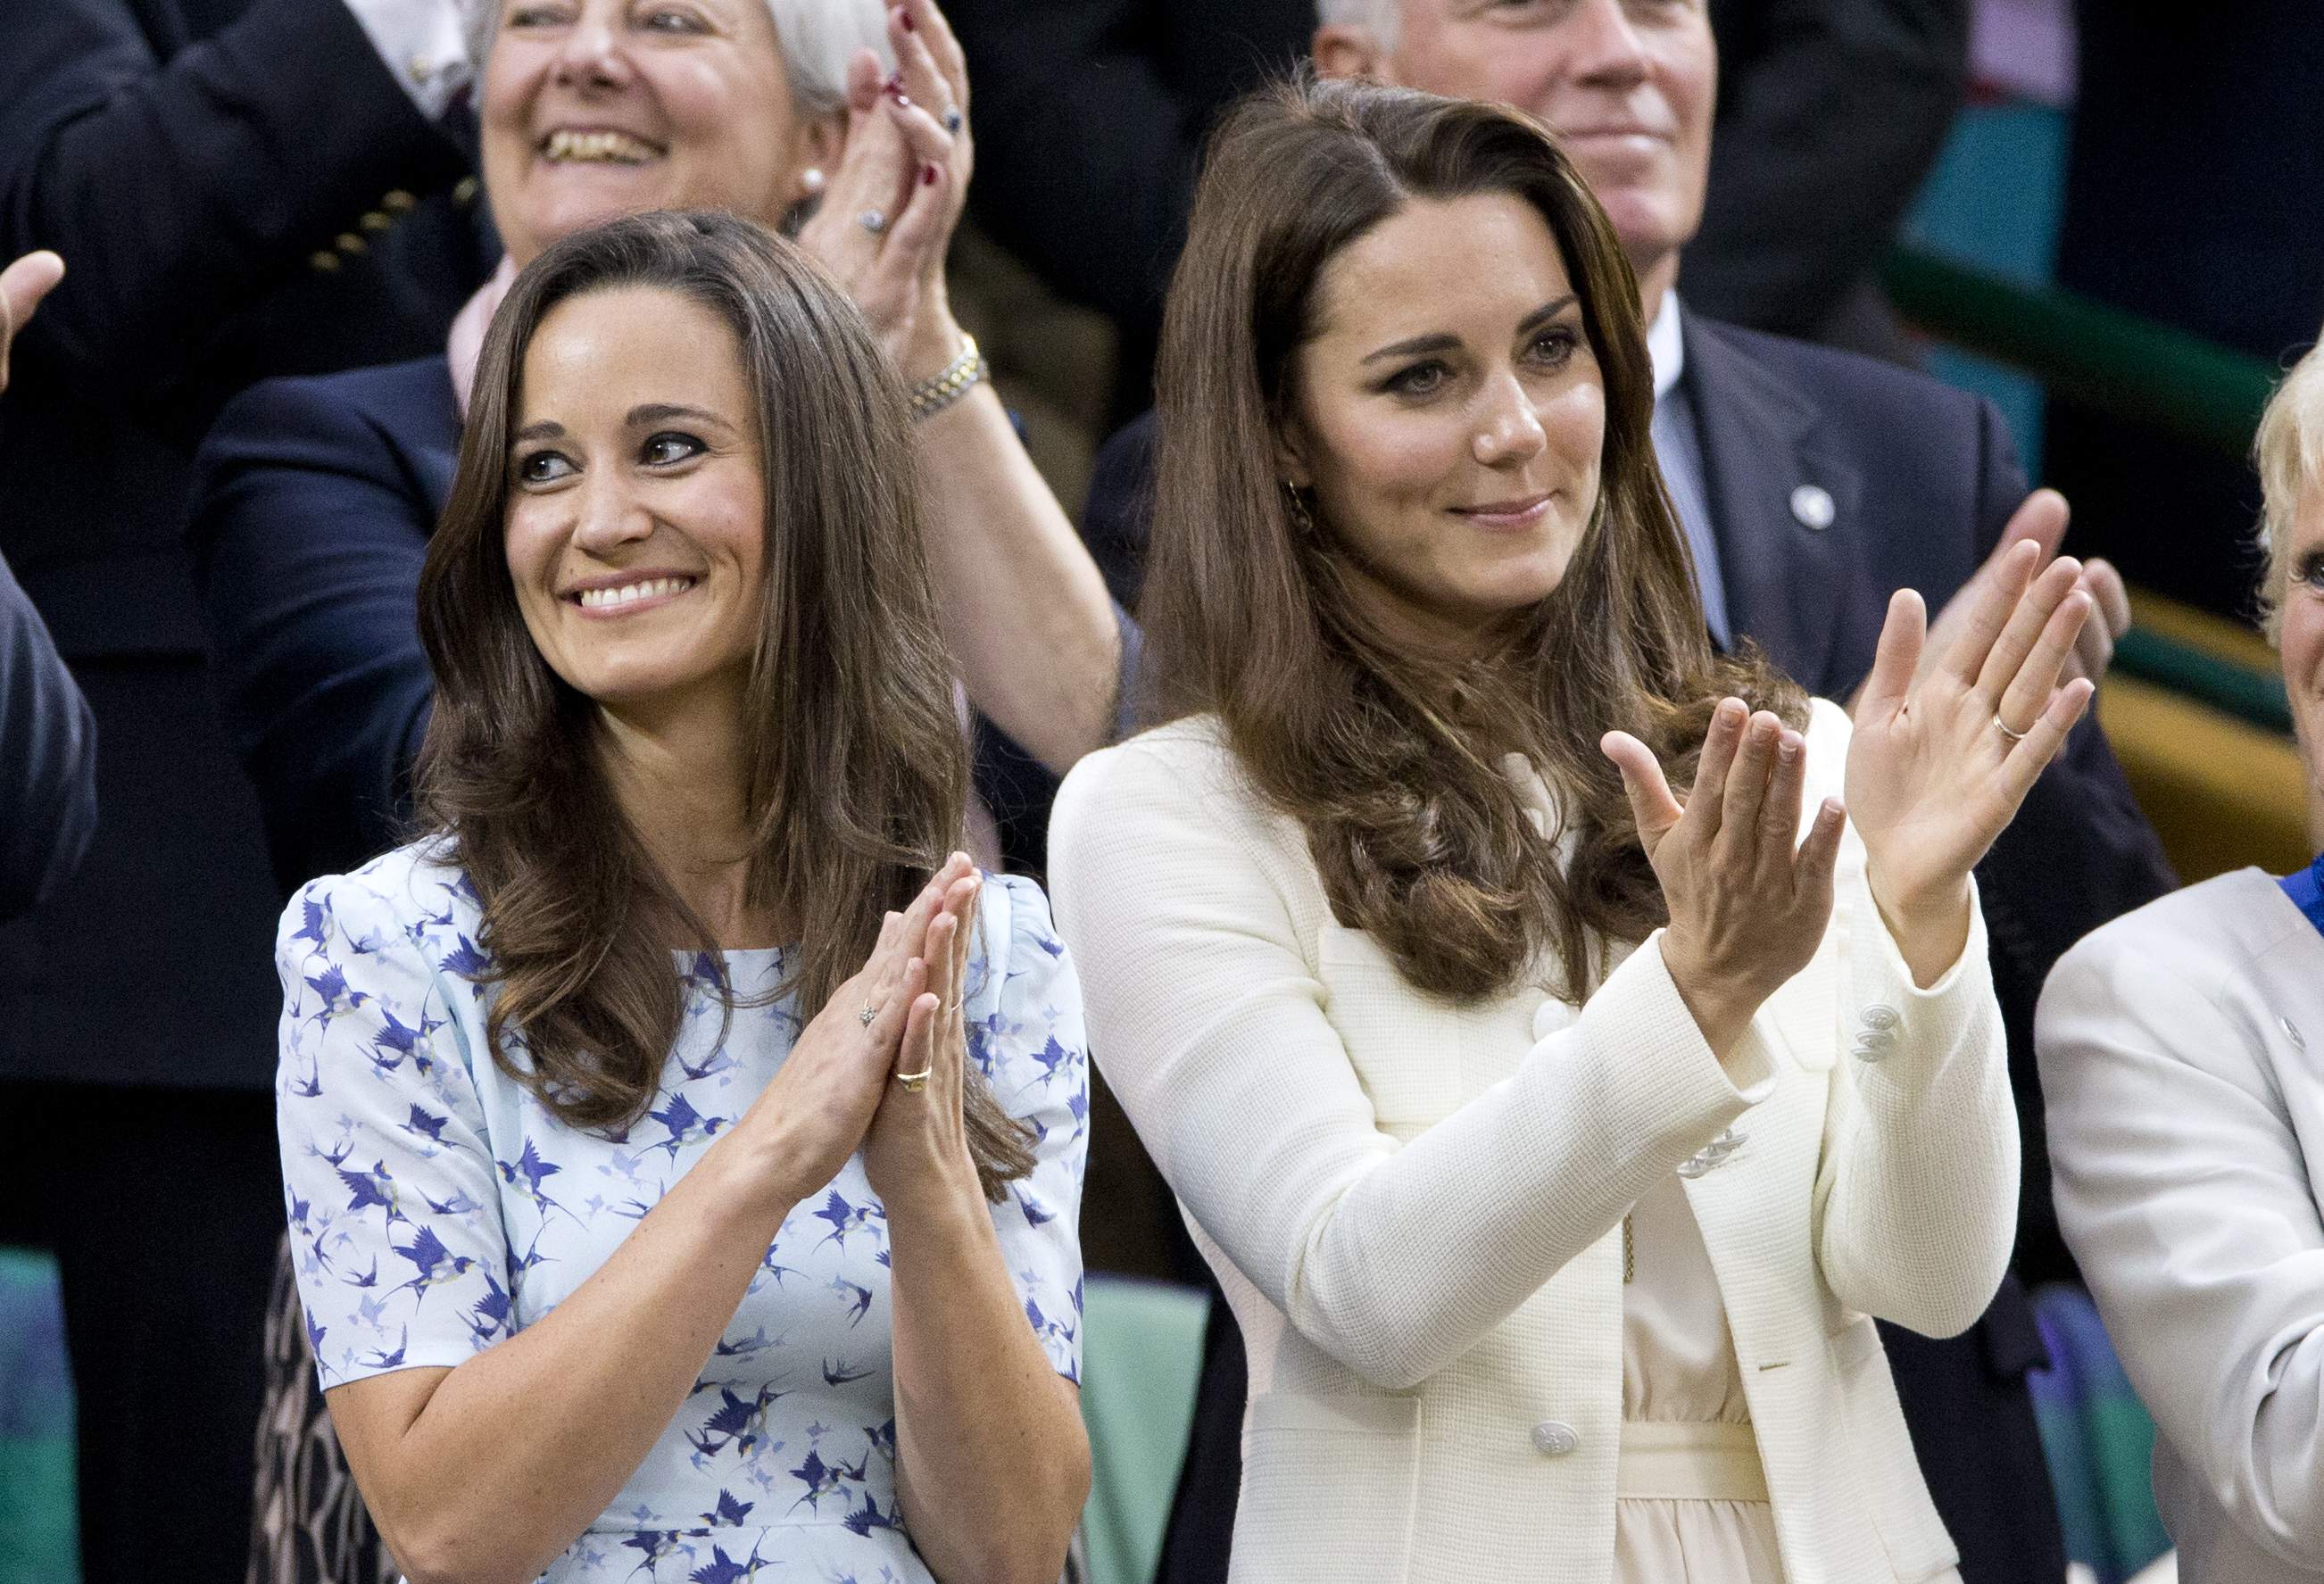 Dudosa reaparición de Kate Middleton: es su hermana Pippa. Pruebas fotográficas